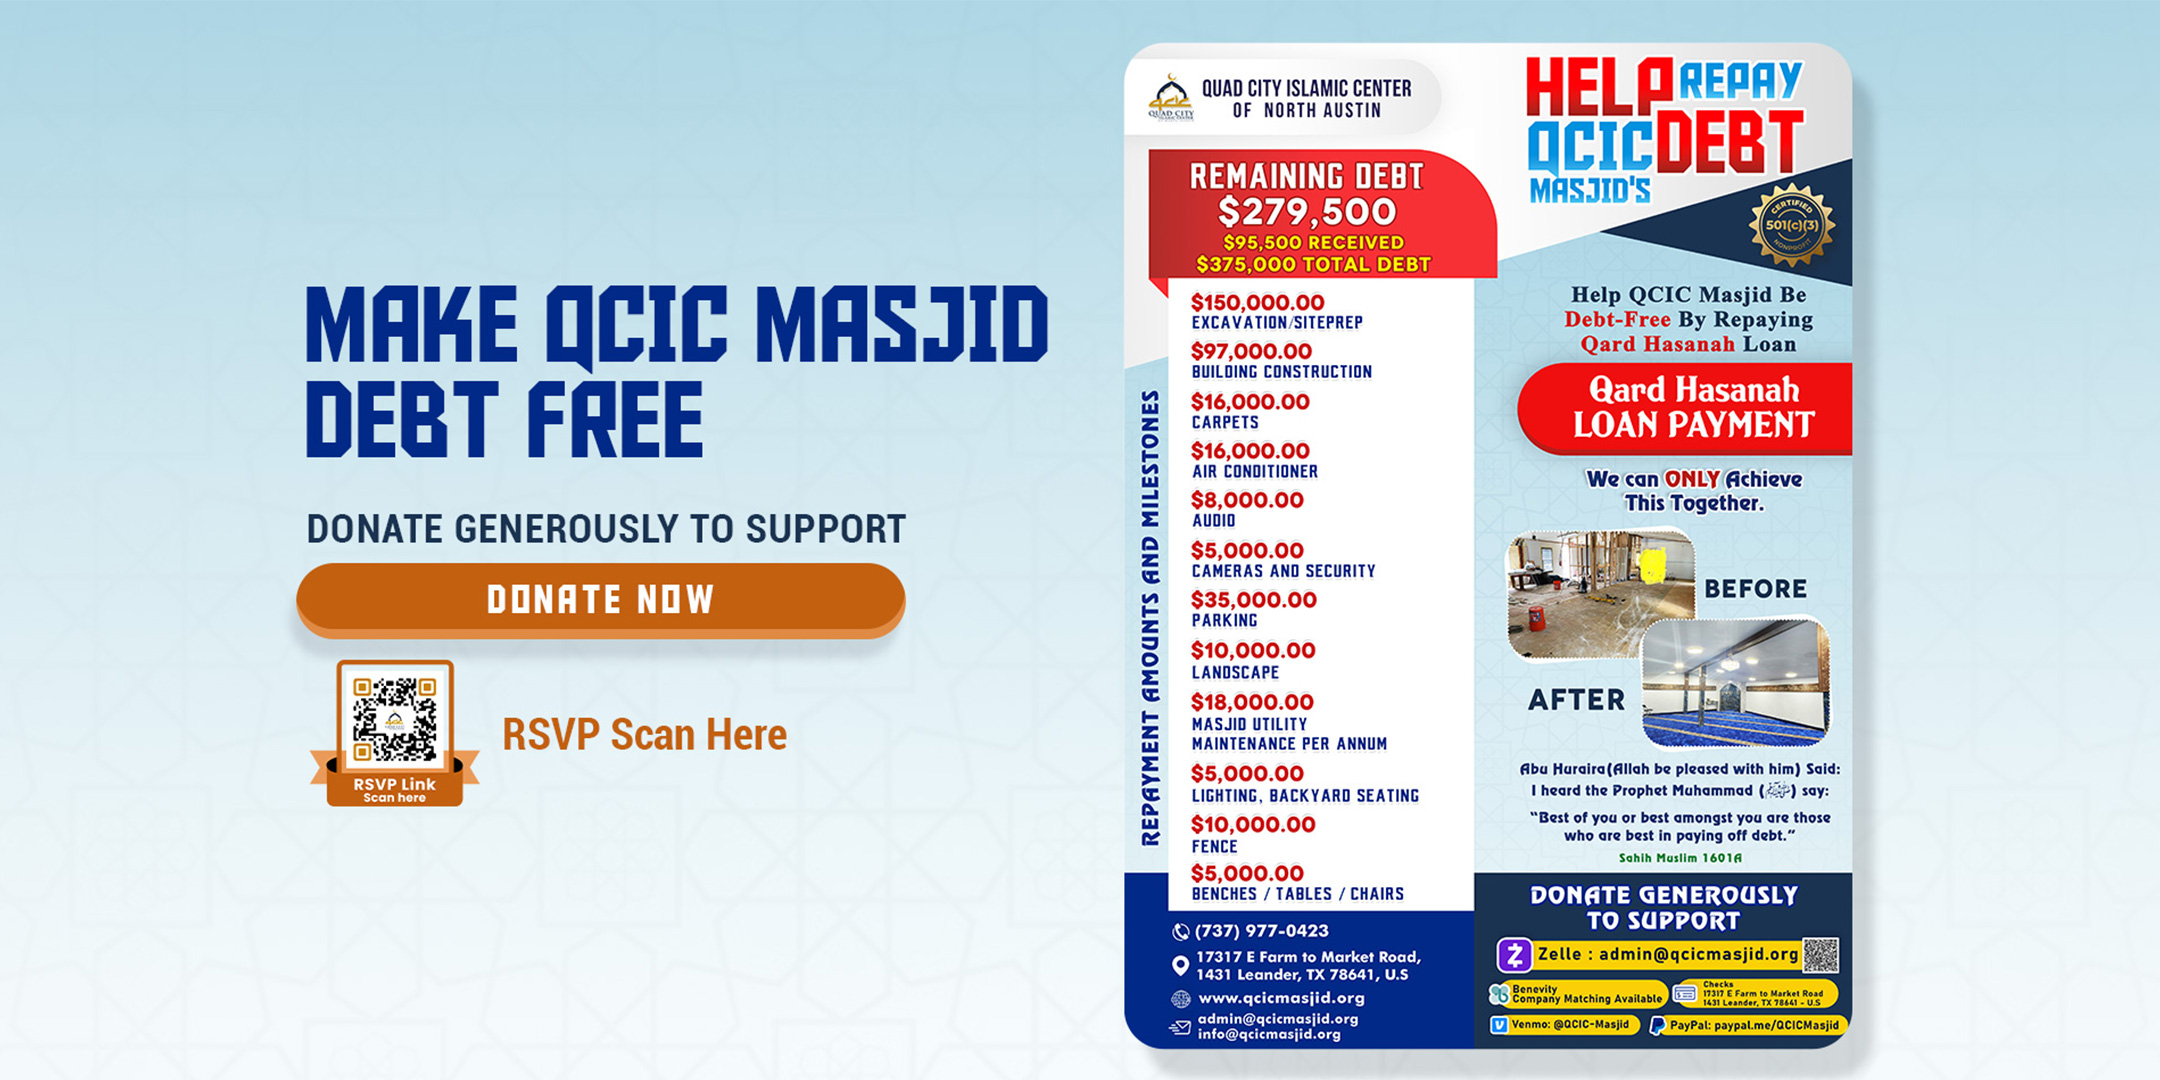 Make QCIC Masjid Debt Free